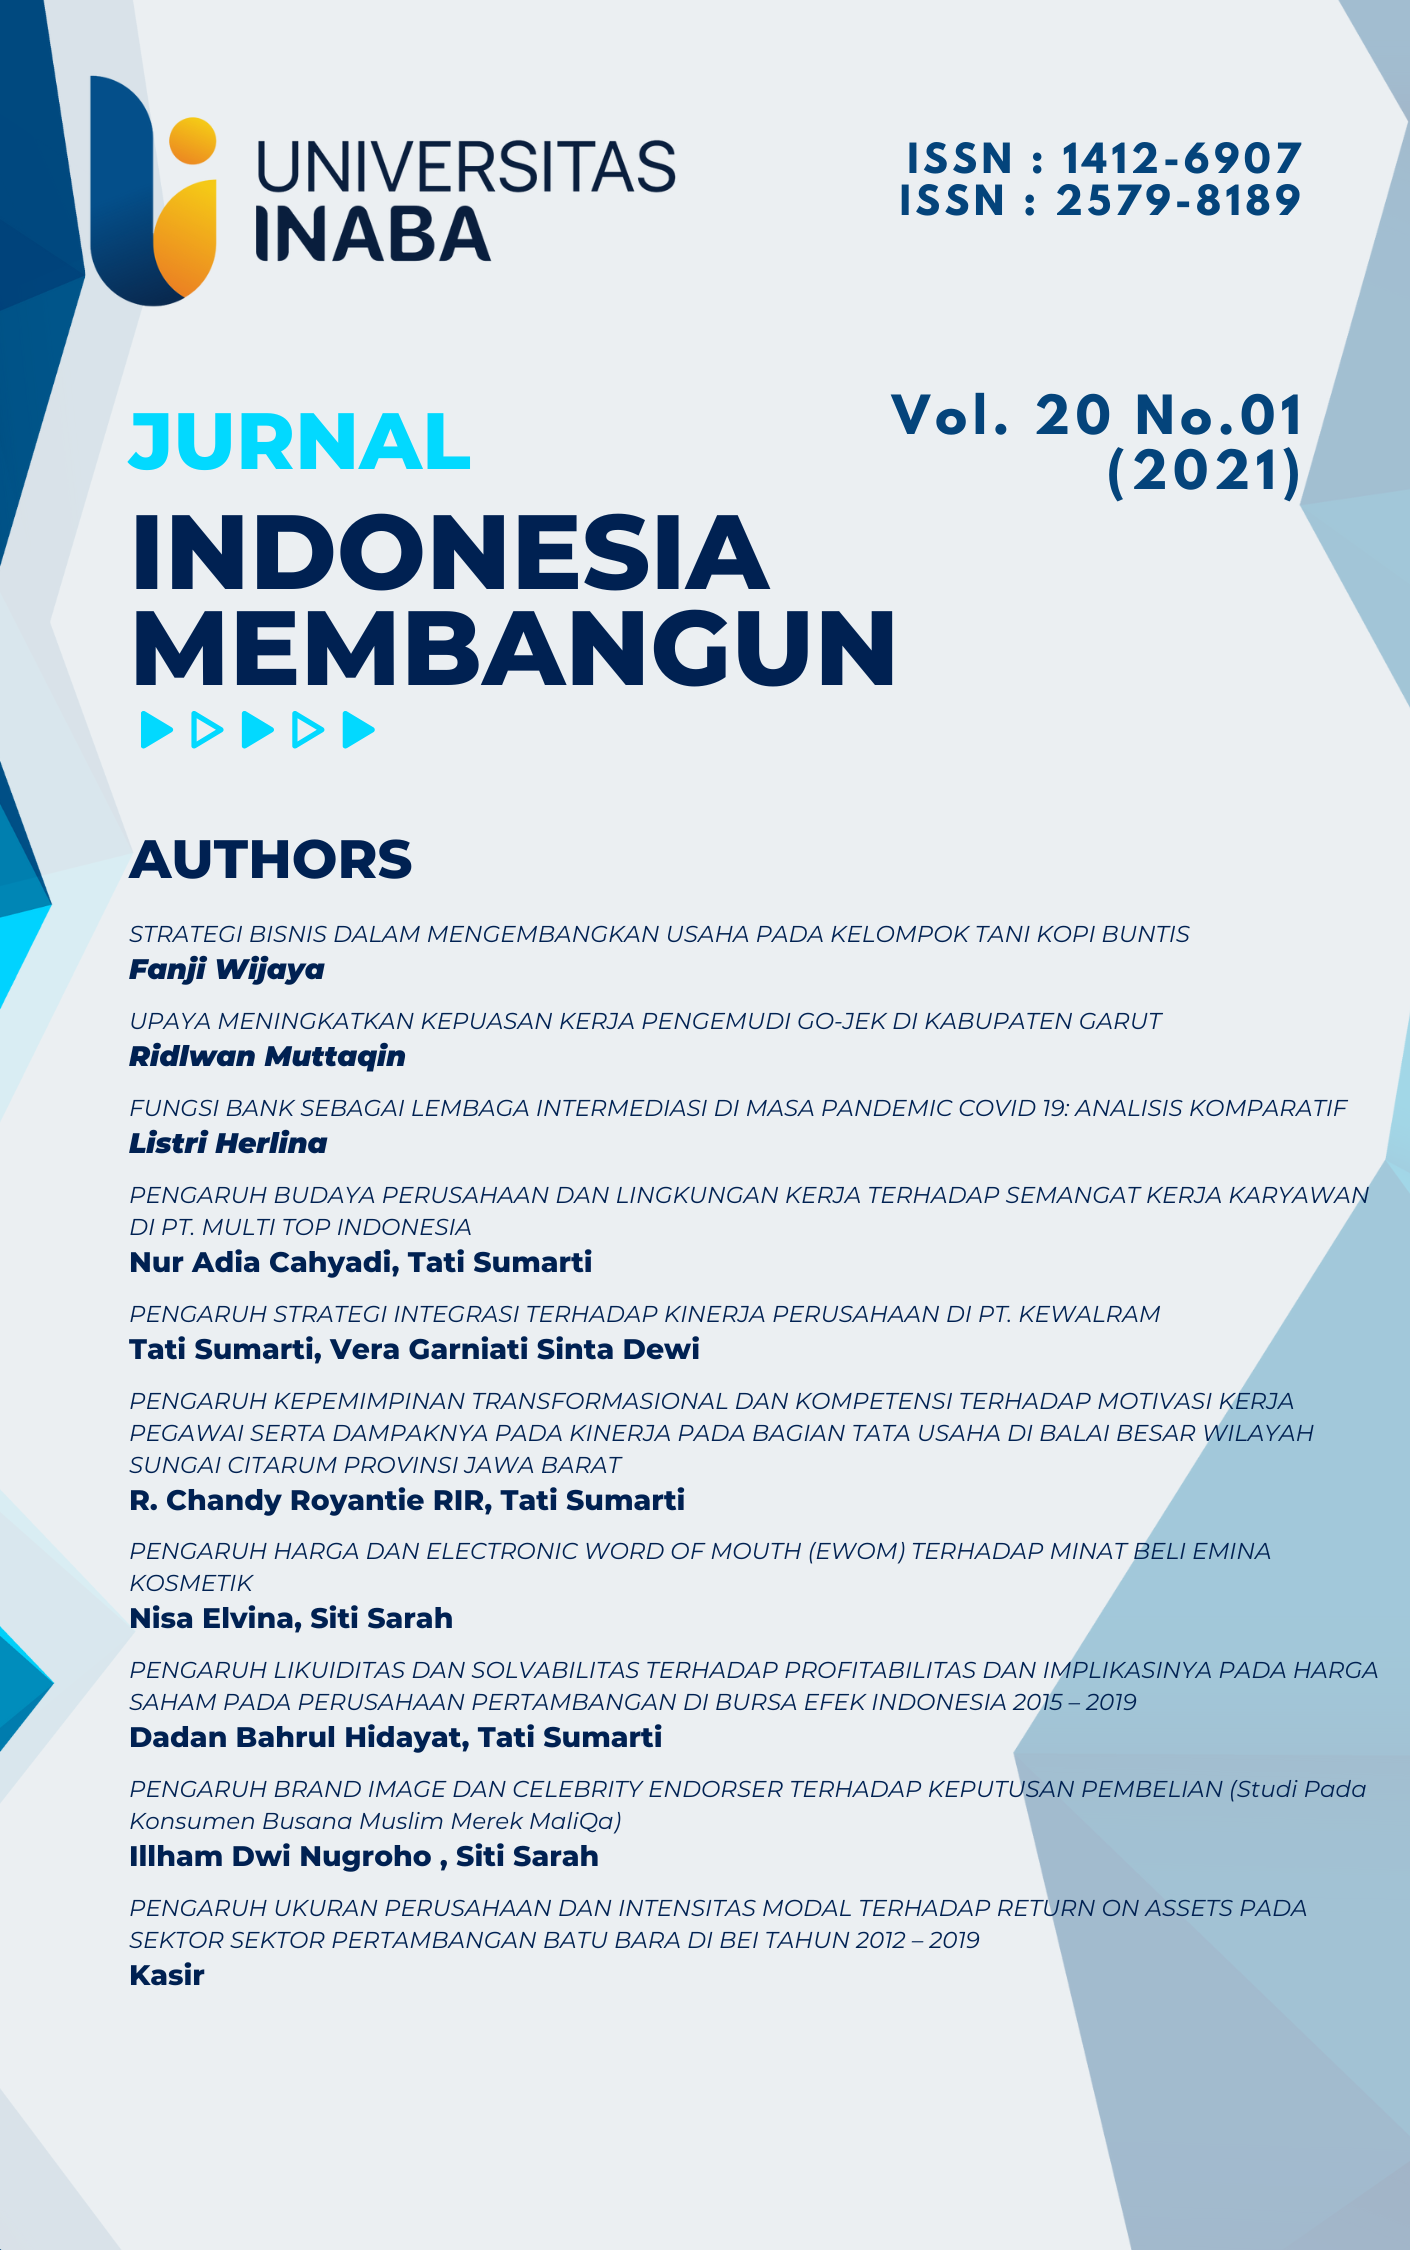 					View Vol. 20 No. 01 (2021): Jurnal Indonesia Membangun
				